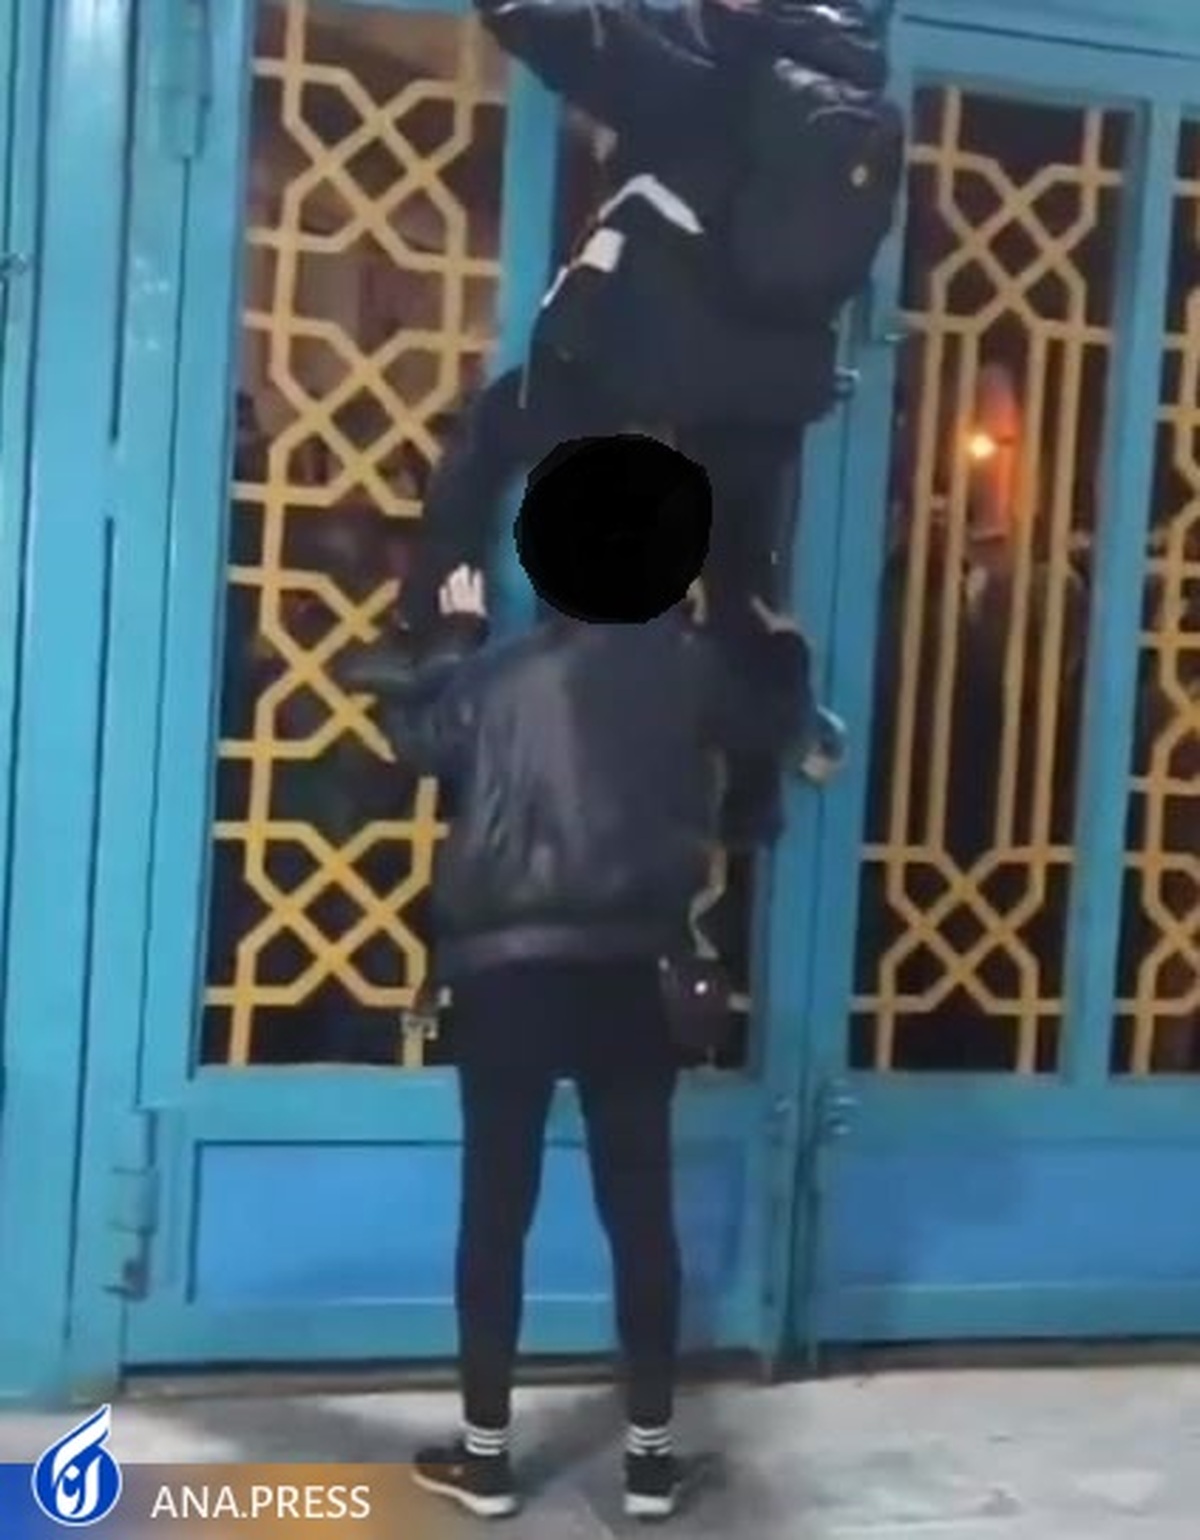 دستگیری عوامل درگیری در شاهزاده حسین(ع) همدان